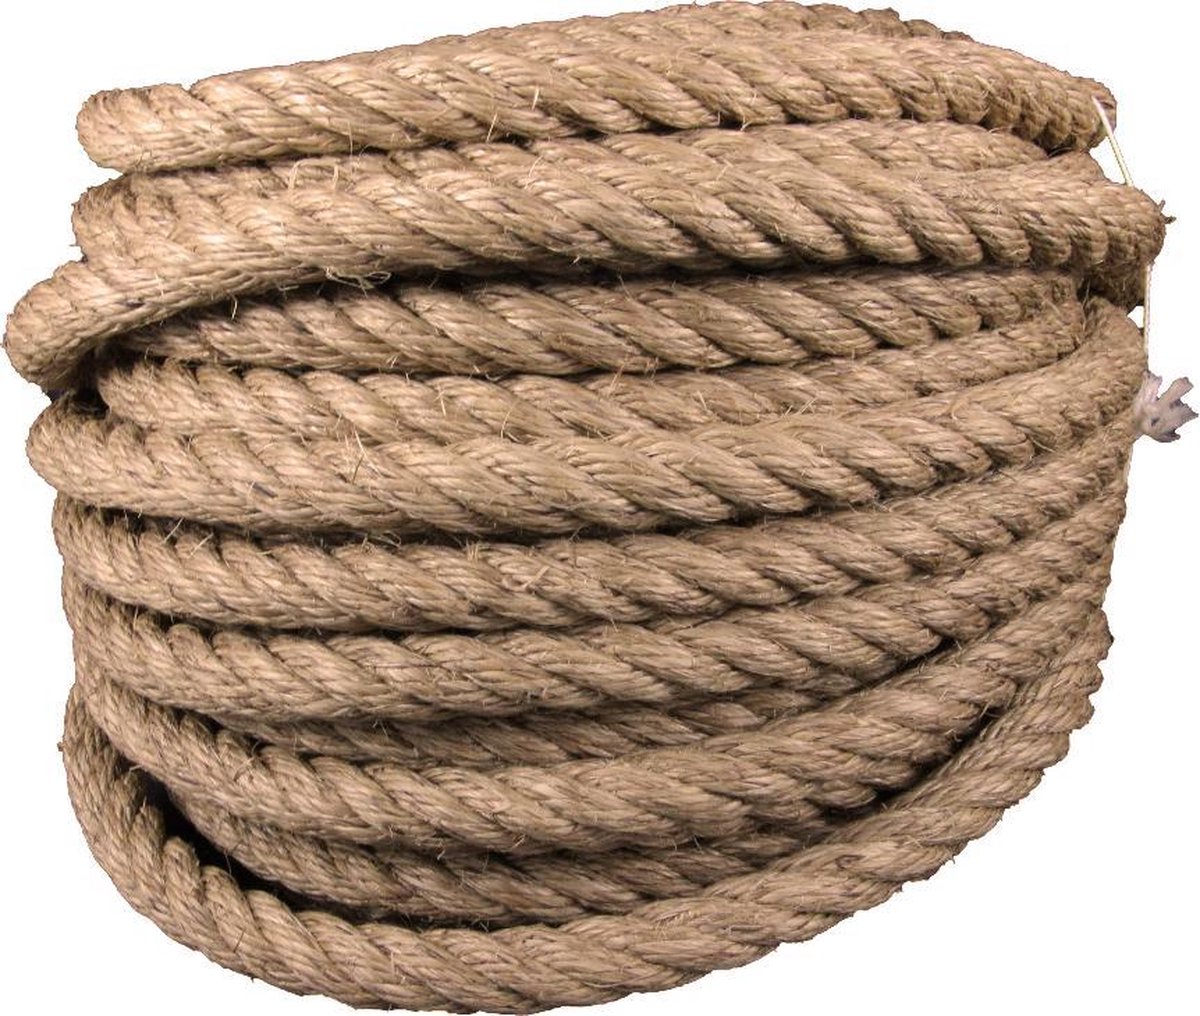 Brig bloem democratische Partij Geslagen manilla touw - 20 mm - 10 meter - natuurlijk touw | bol.com